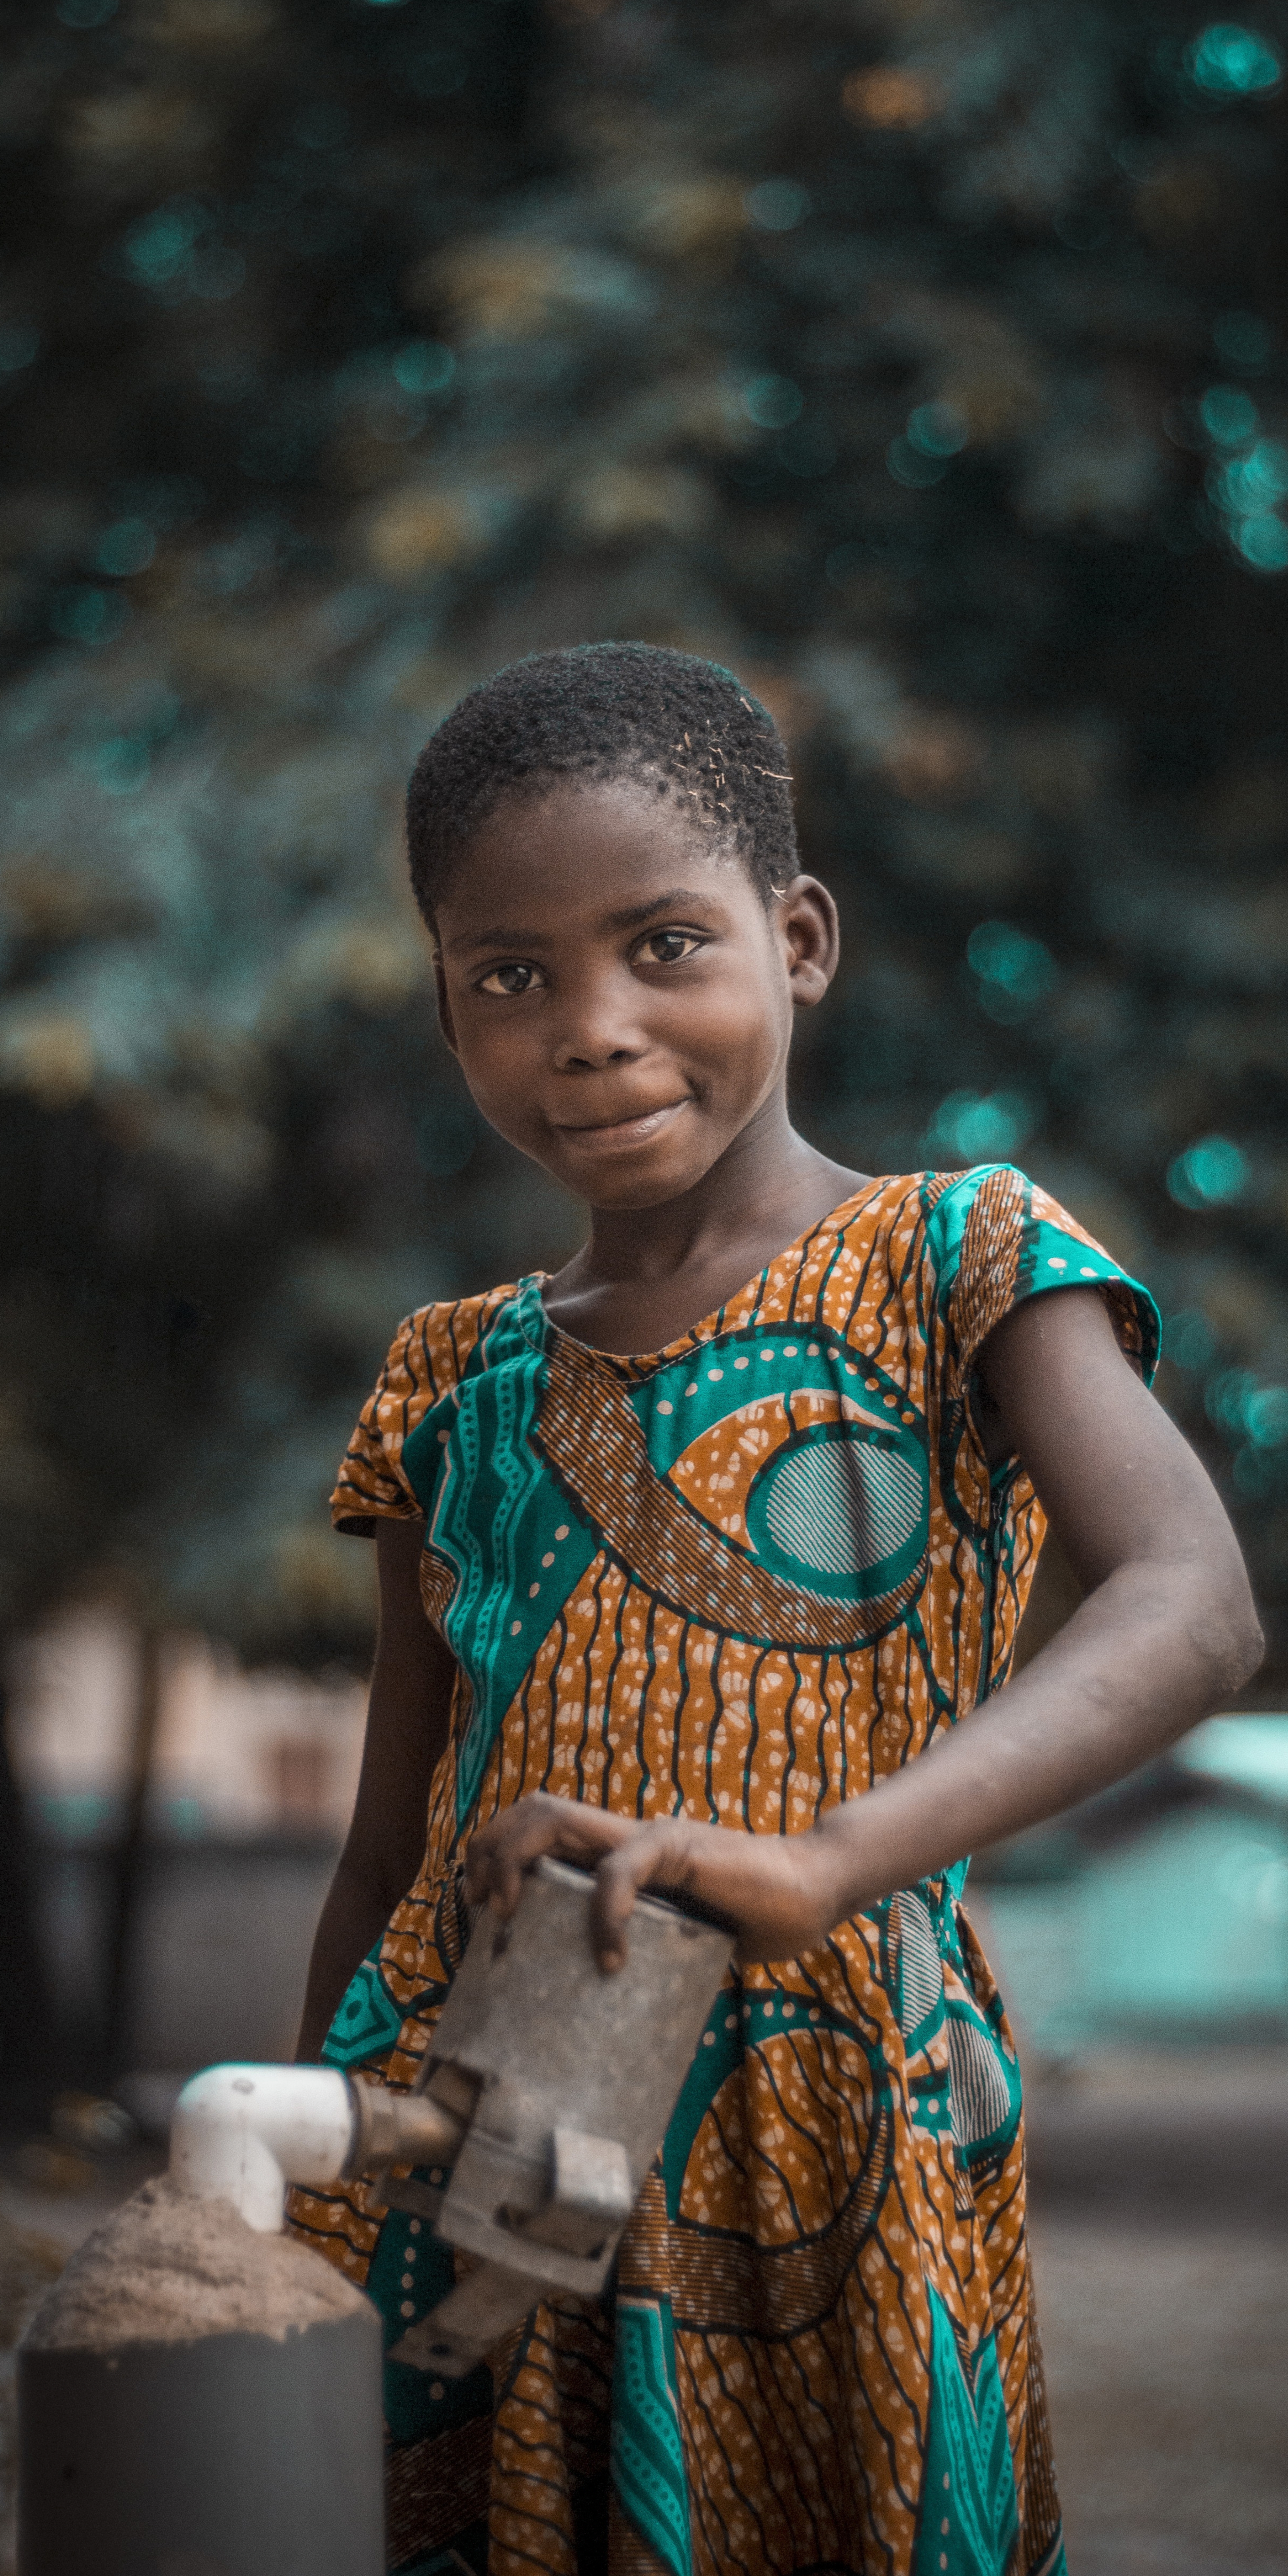 CenGiving - Ghana's Children